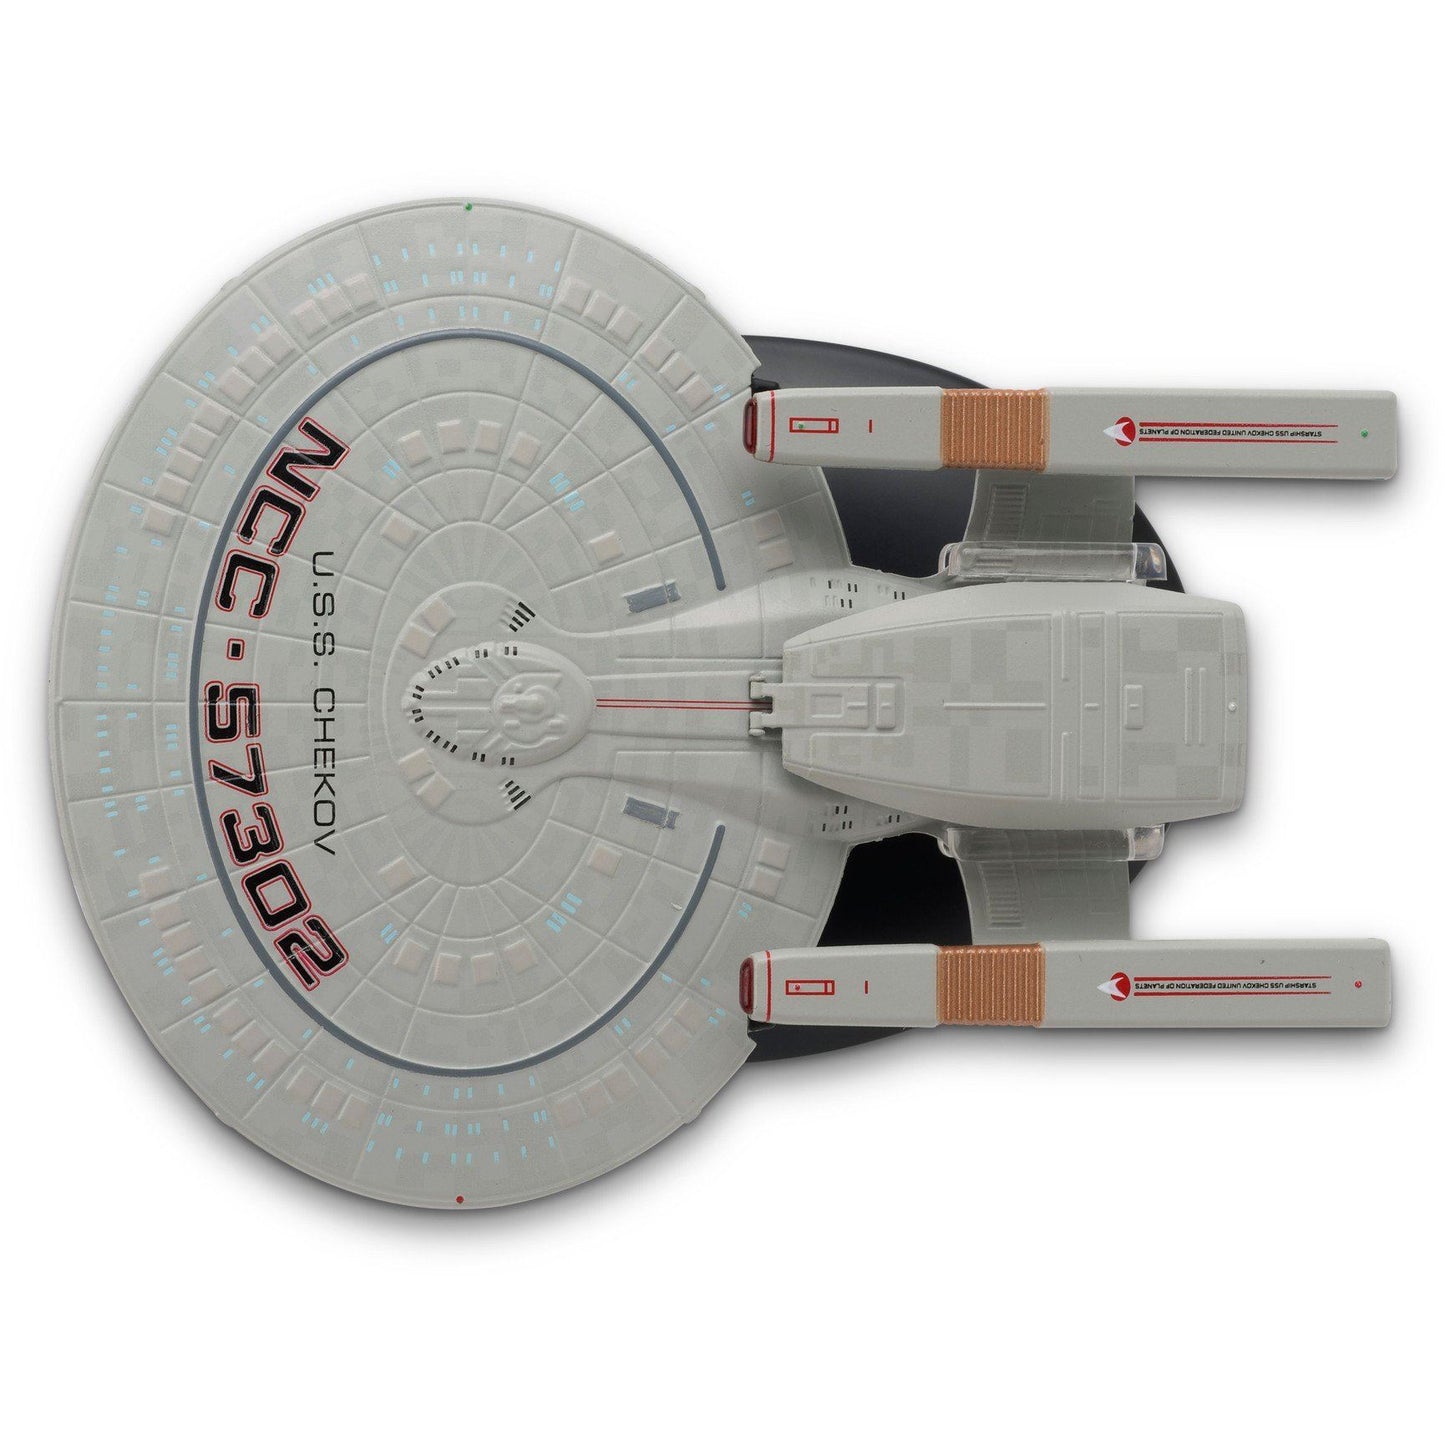 #110 USS Chekov Springfield Classe Modèle Die Cast Navire Star Trek